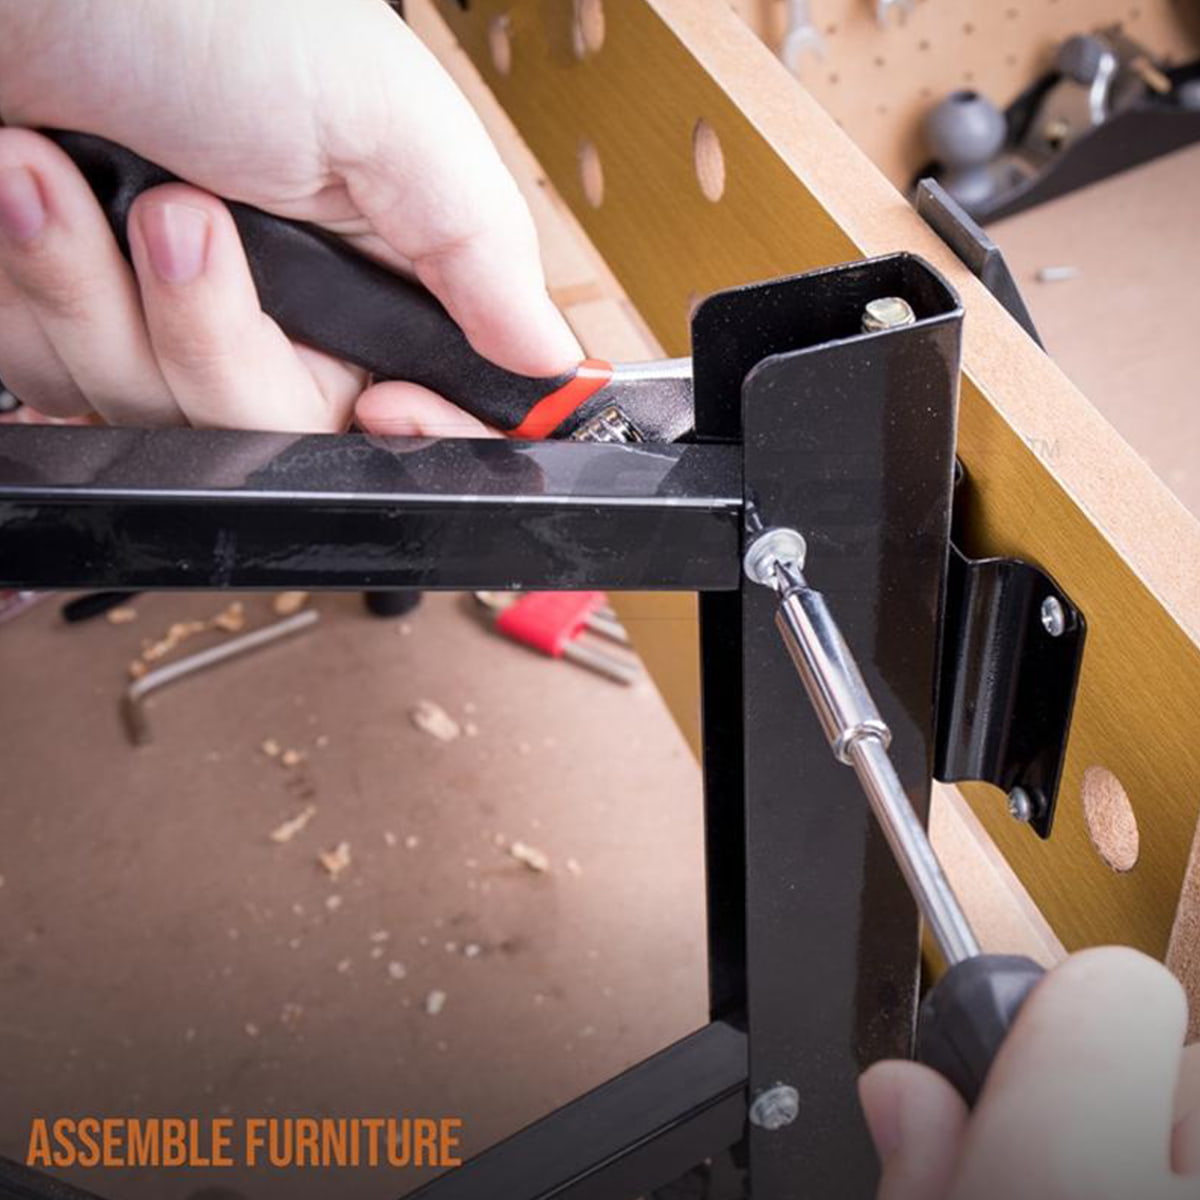 53 عدد Muti Purpose Combo Kit Hand Tools Homehold Home Repairing Diy Kits Complet Tool Tools